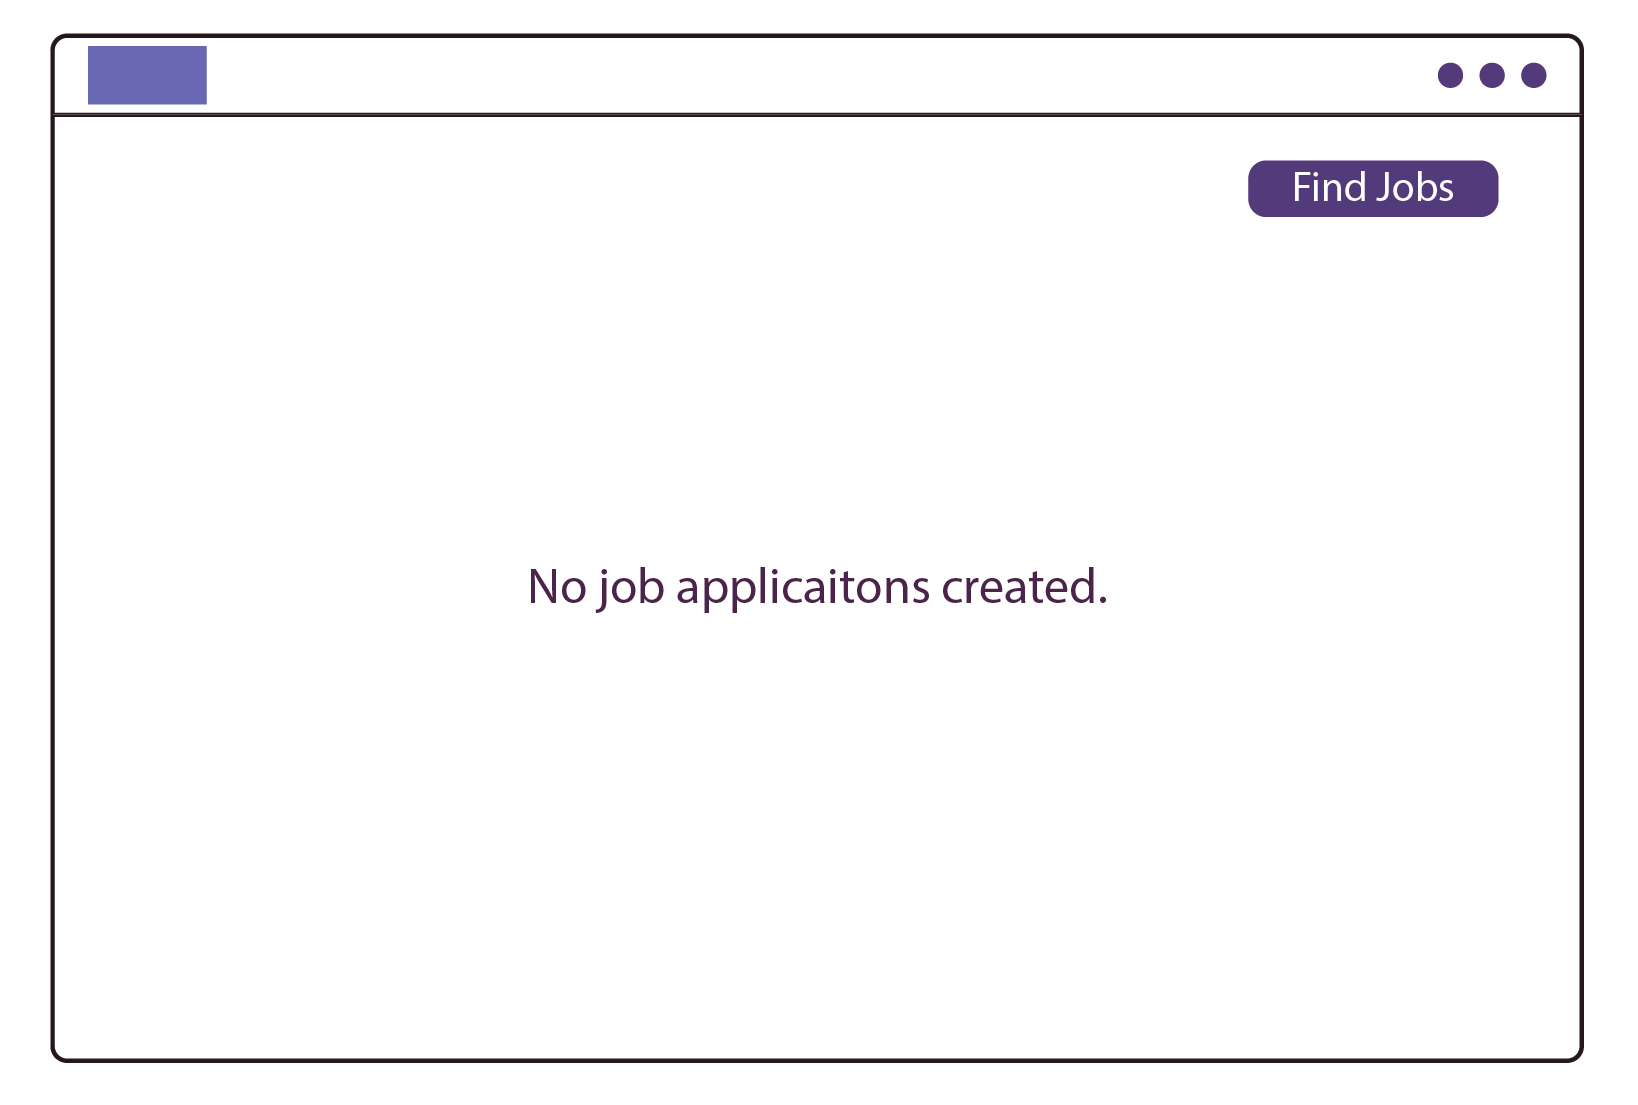 No job applications created 